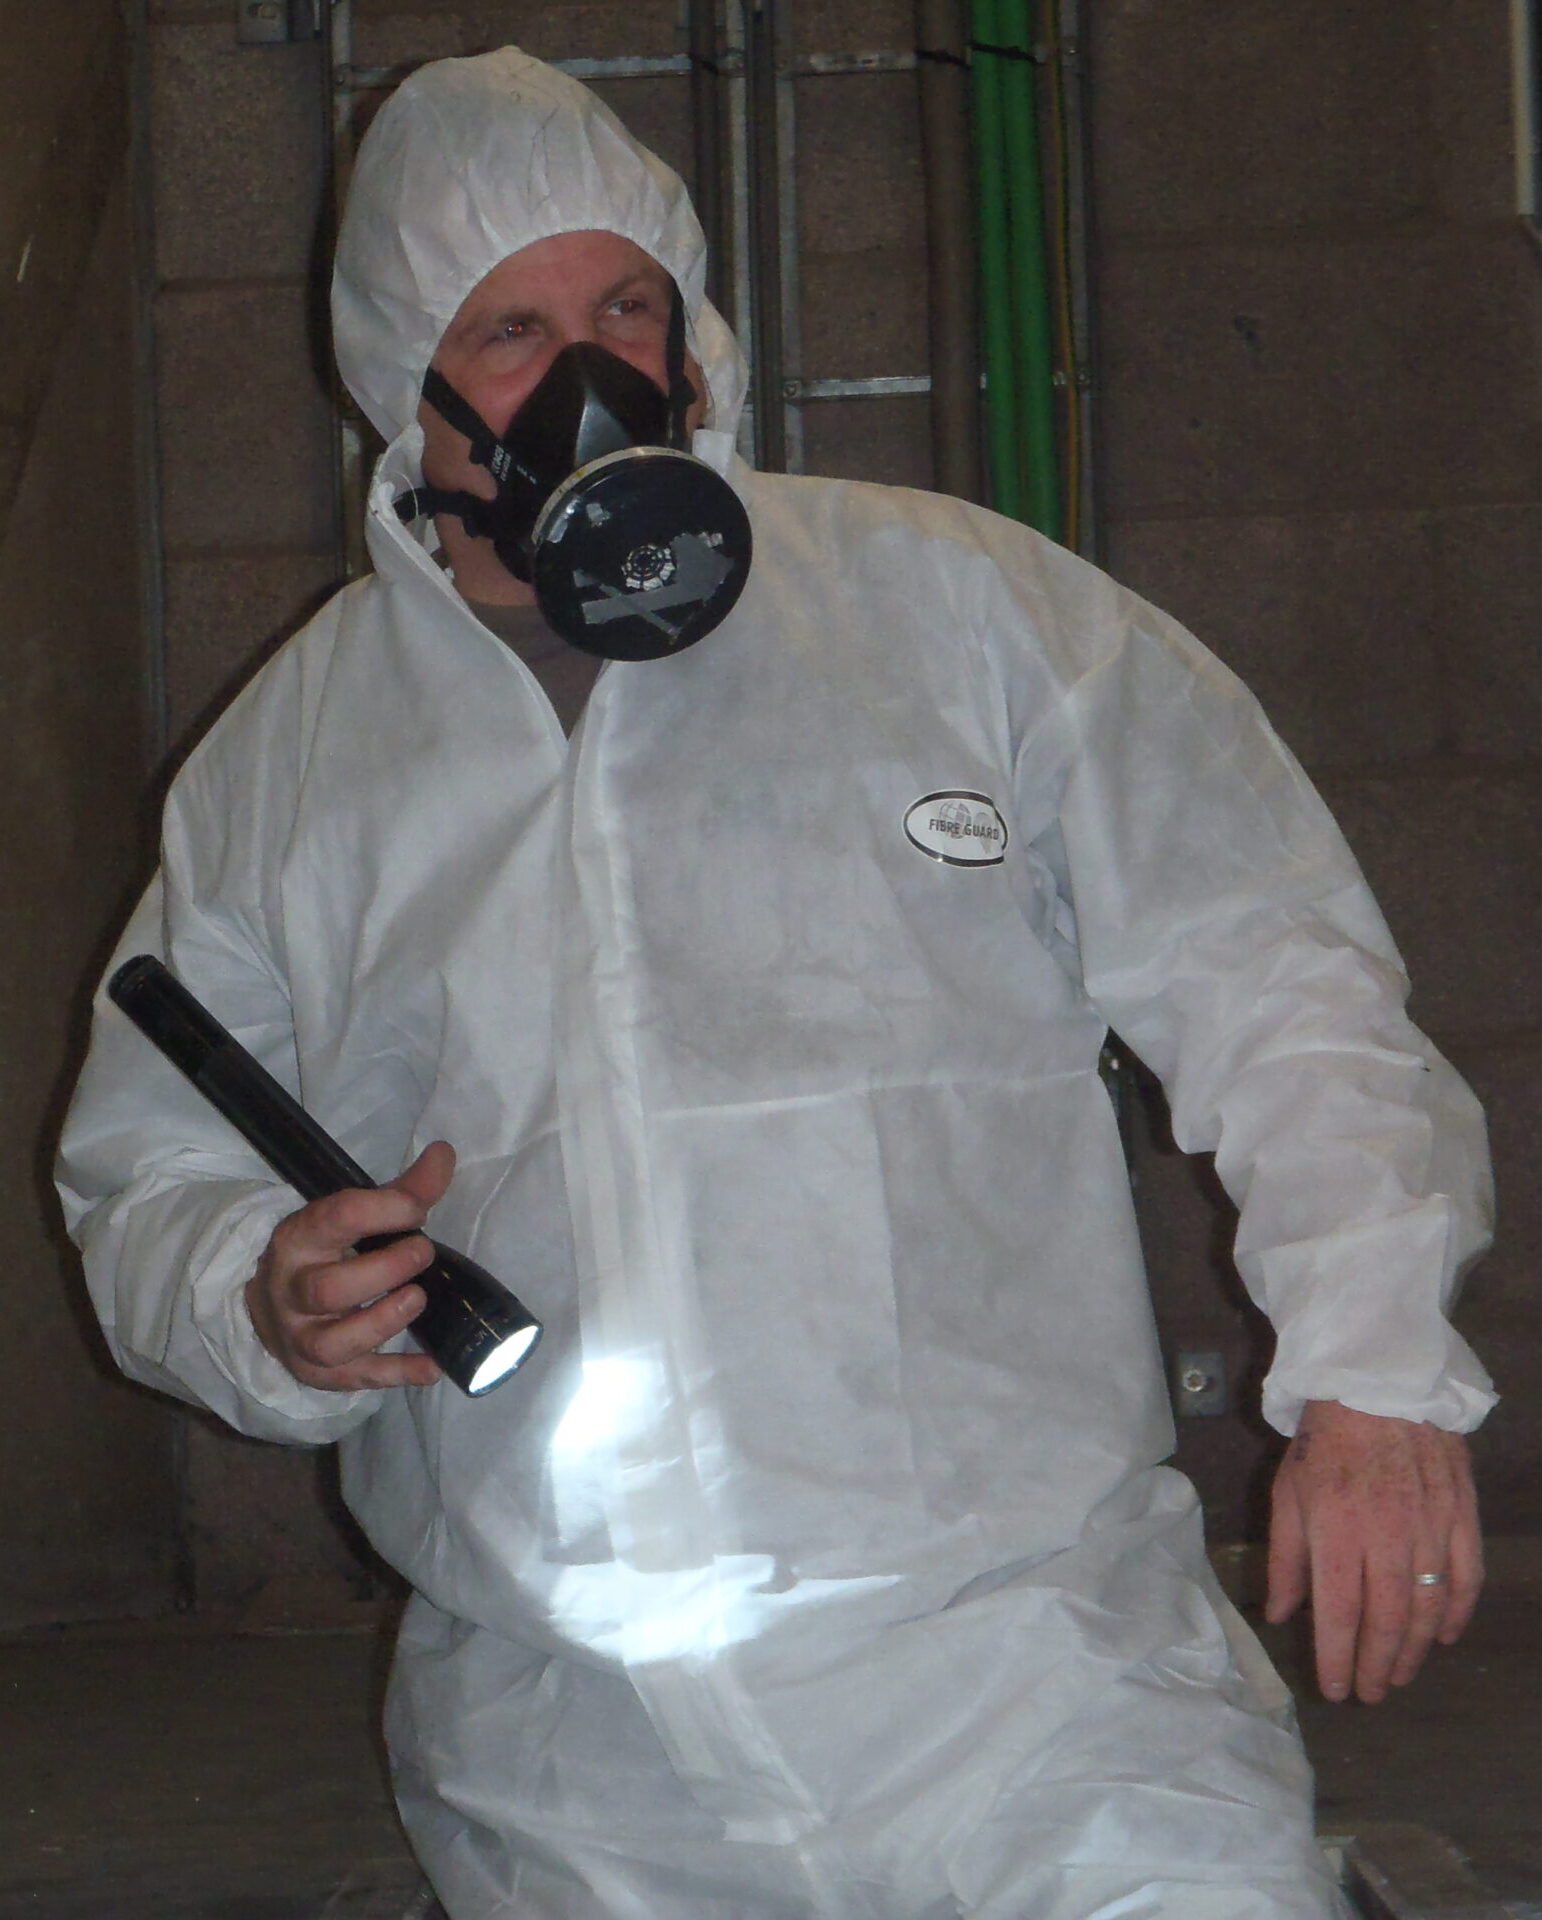 deskundig inventariseerder asbest van RPS in overall met gelaatsmasker